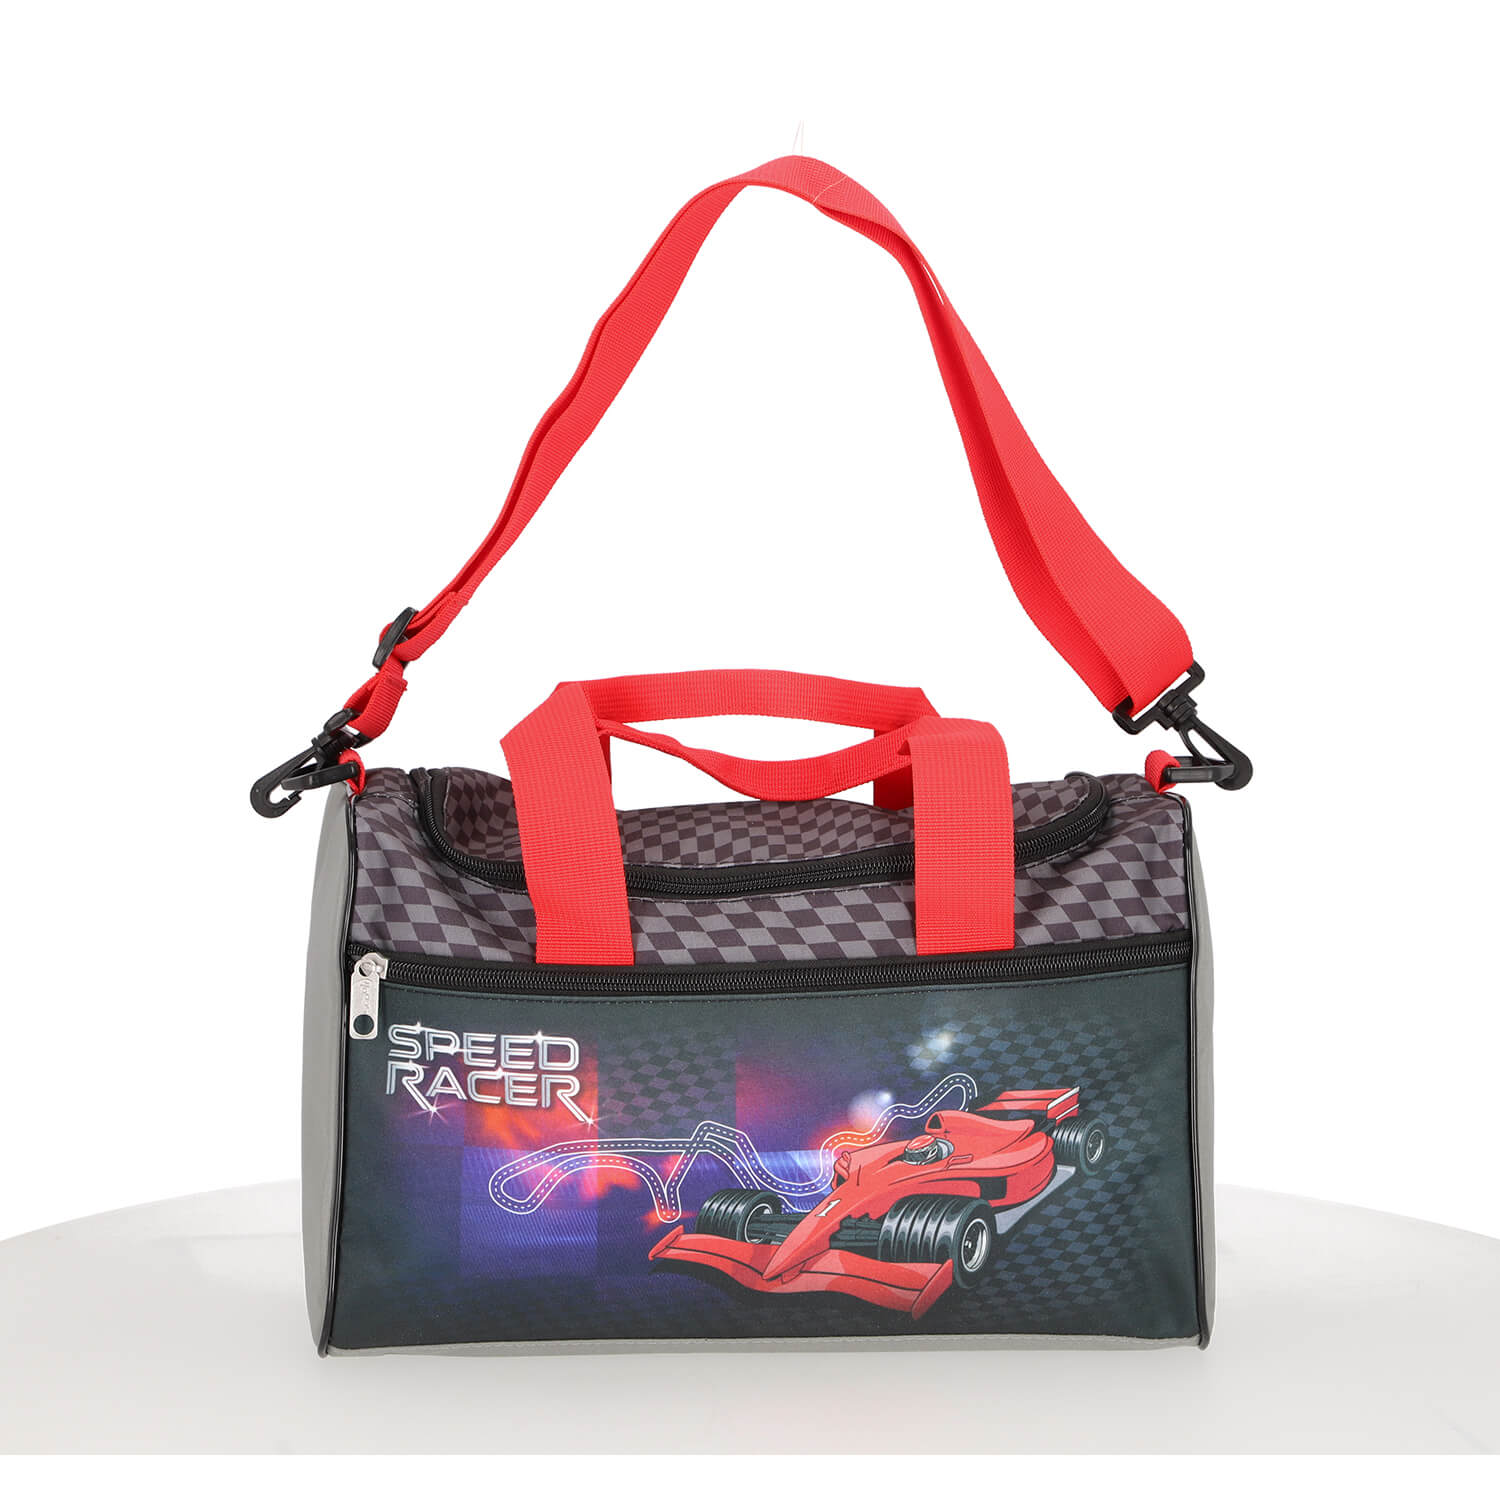 Scooli Sporttasche mit Speed Racer Rennwagen Motiv in rot/schwarz